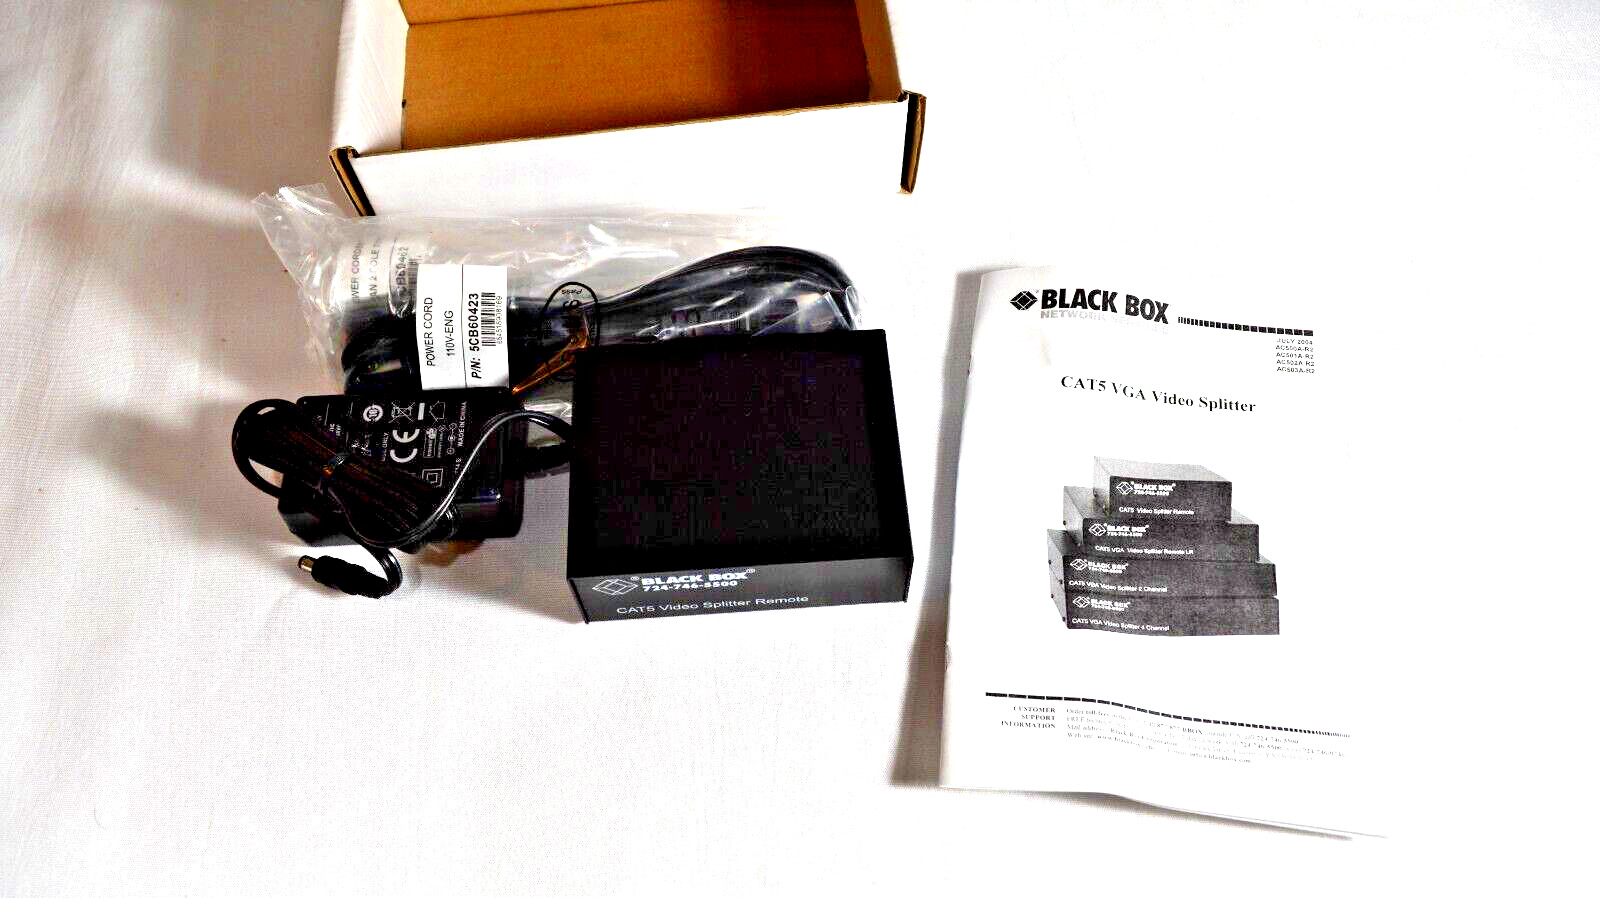 Black Box Corp AC502A-R2 - CAT5 VGA Video Splitter Remote